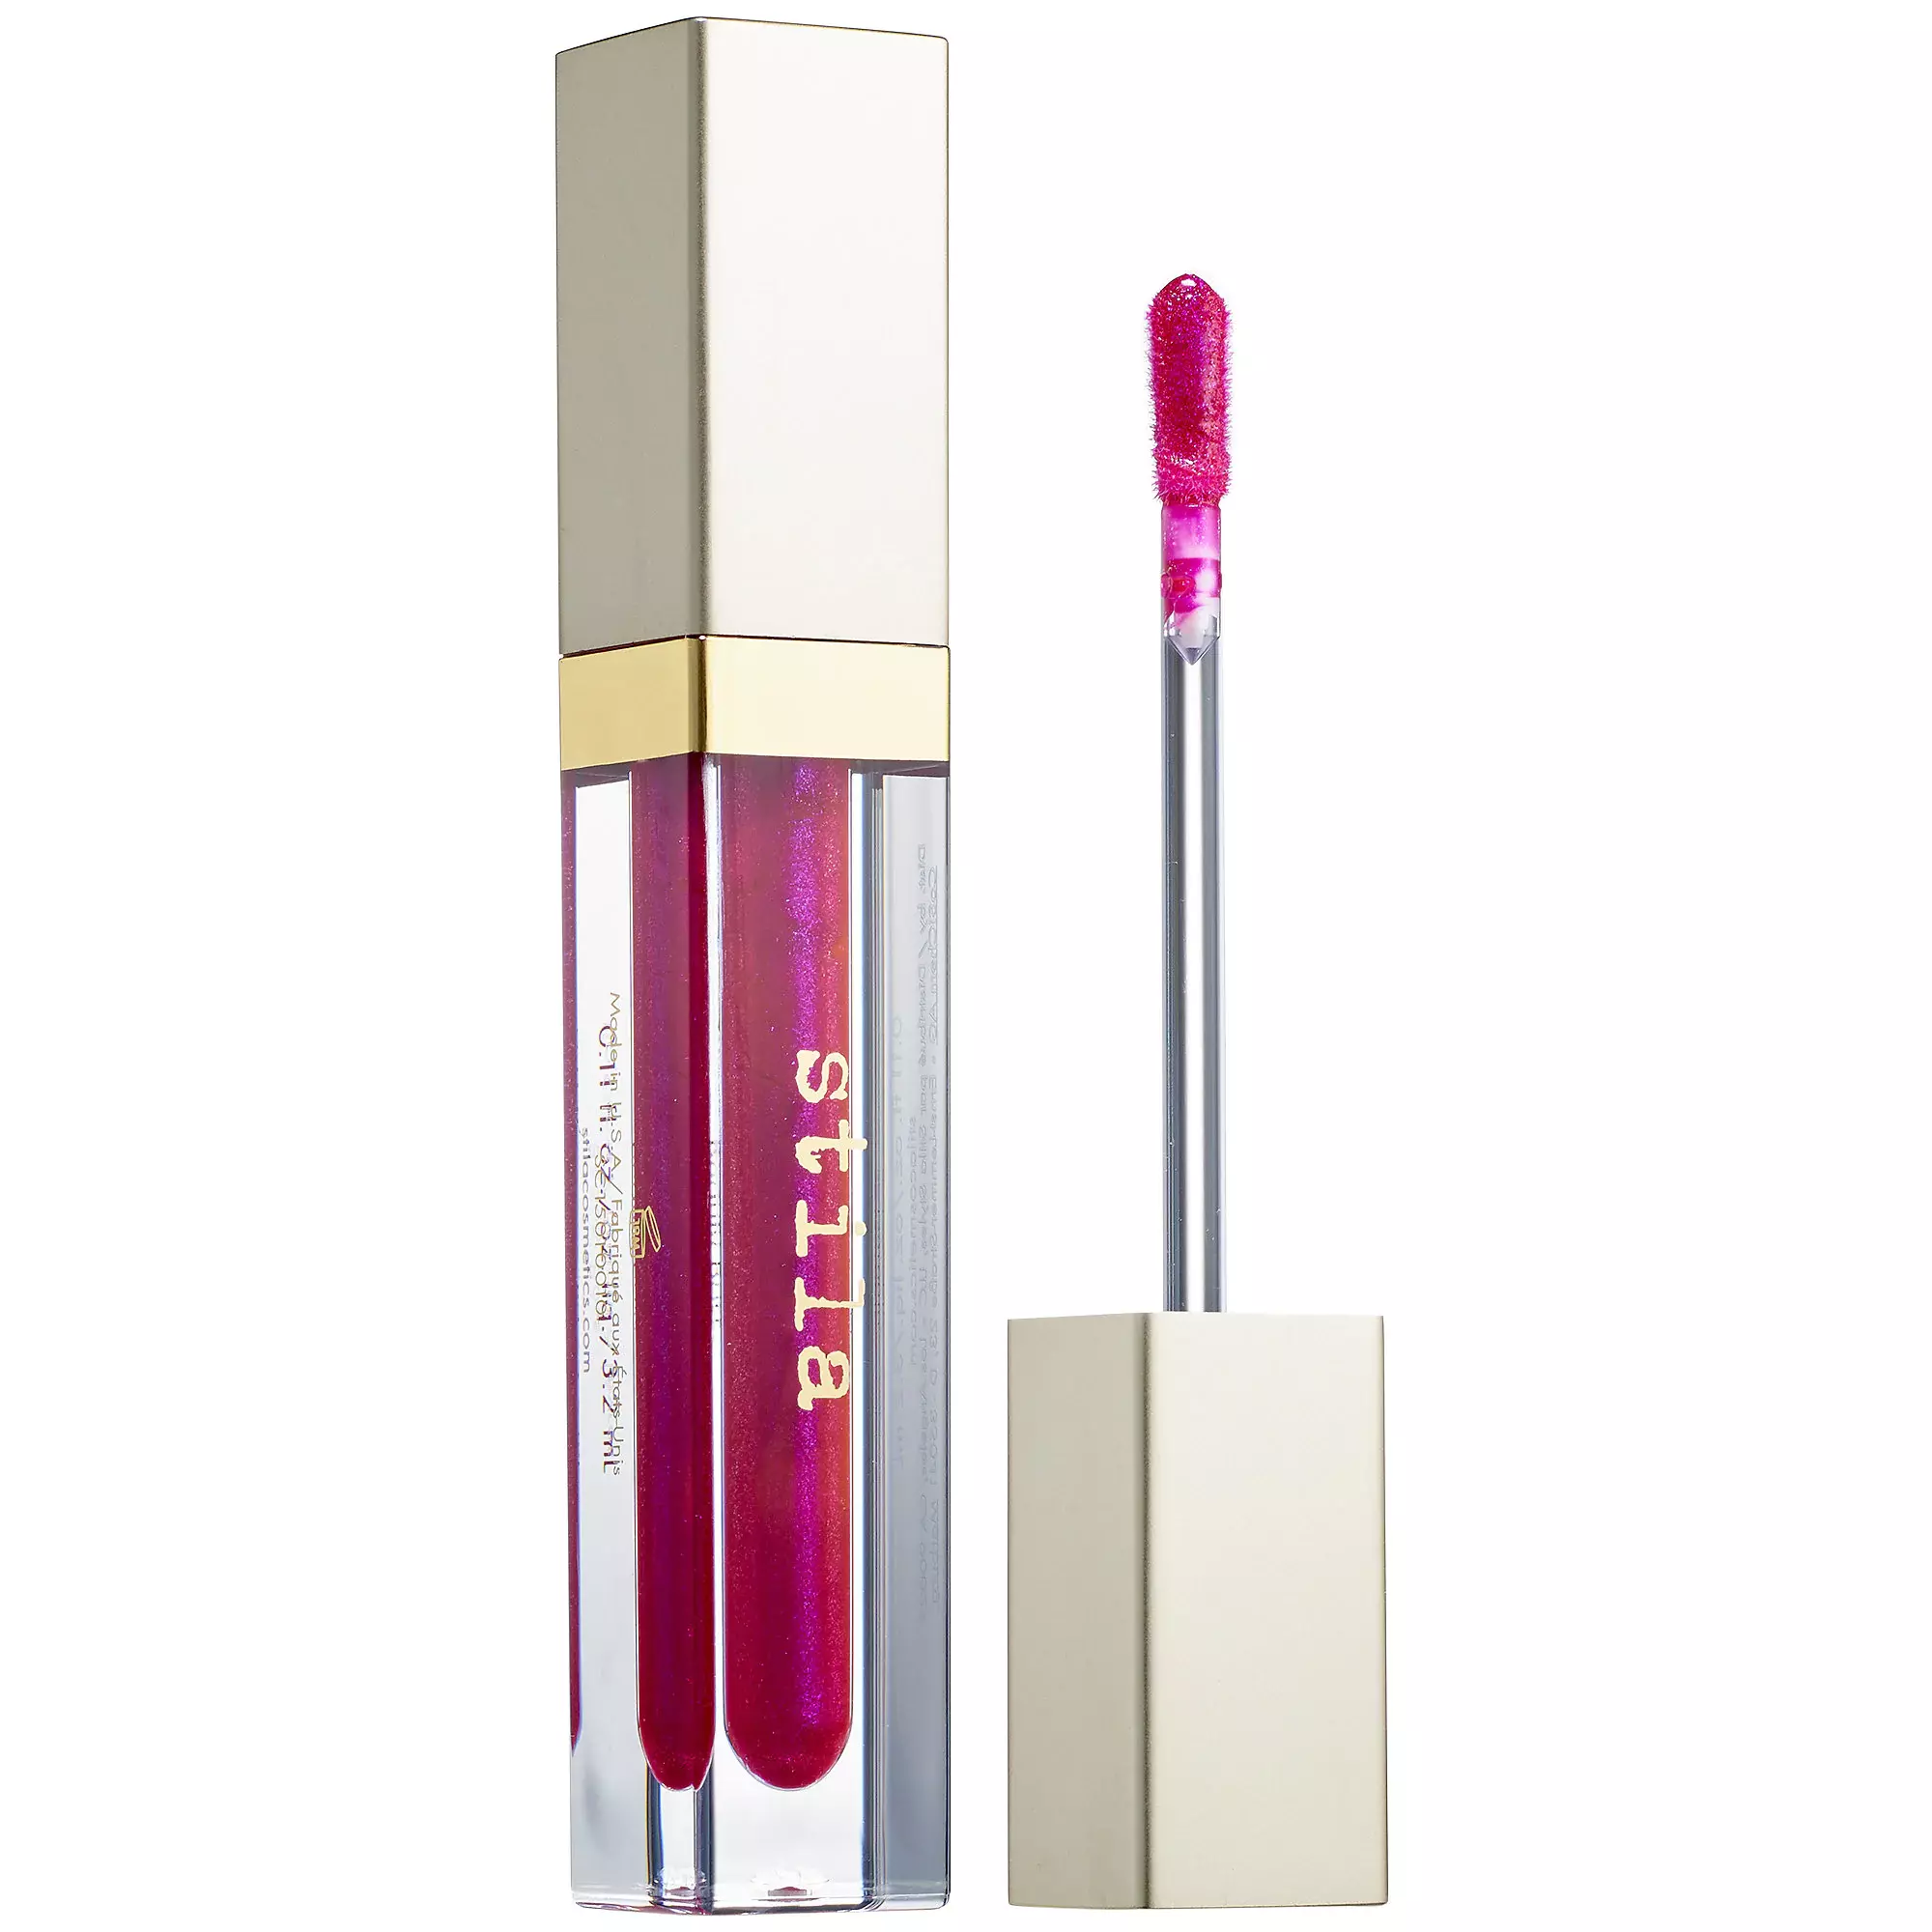 Stila Beauty Boss Lip Gloss Payday | Glambot.com - Best on cosmetics